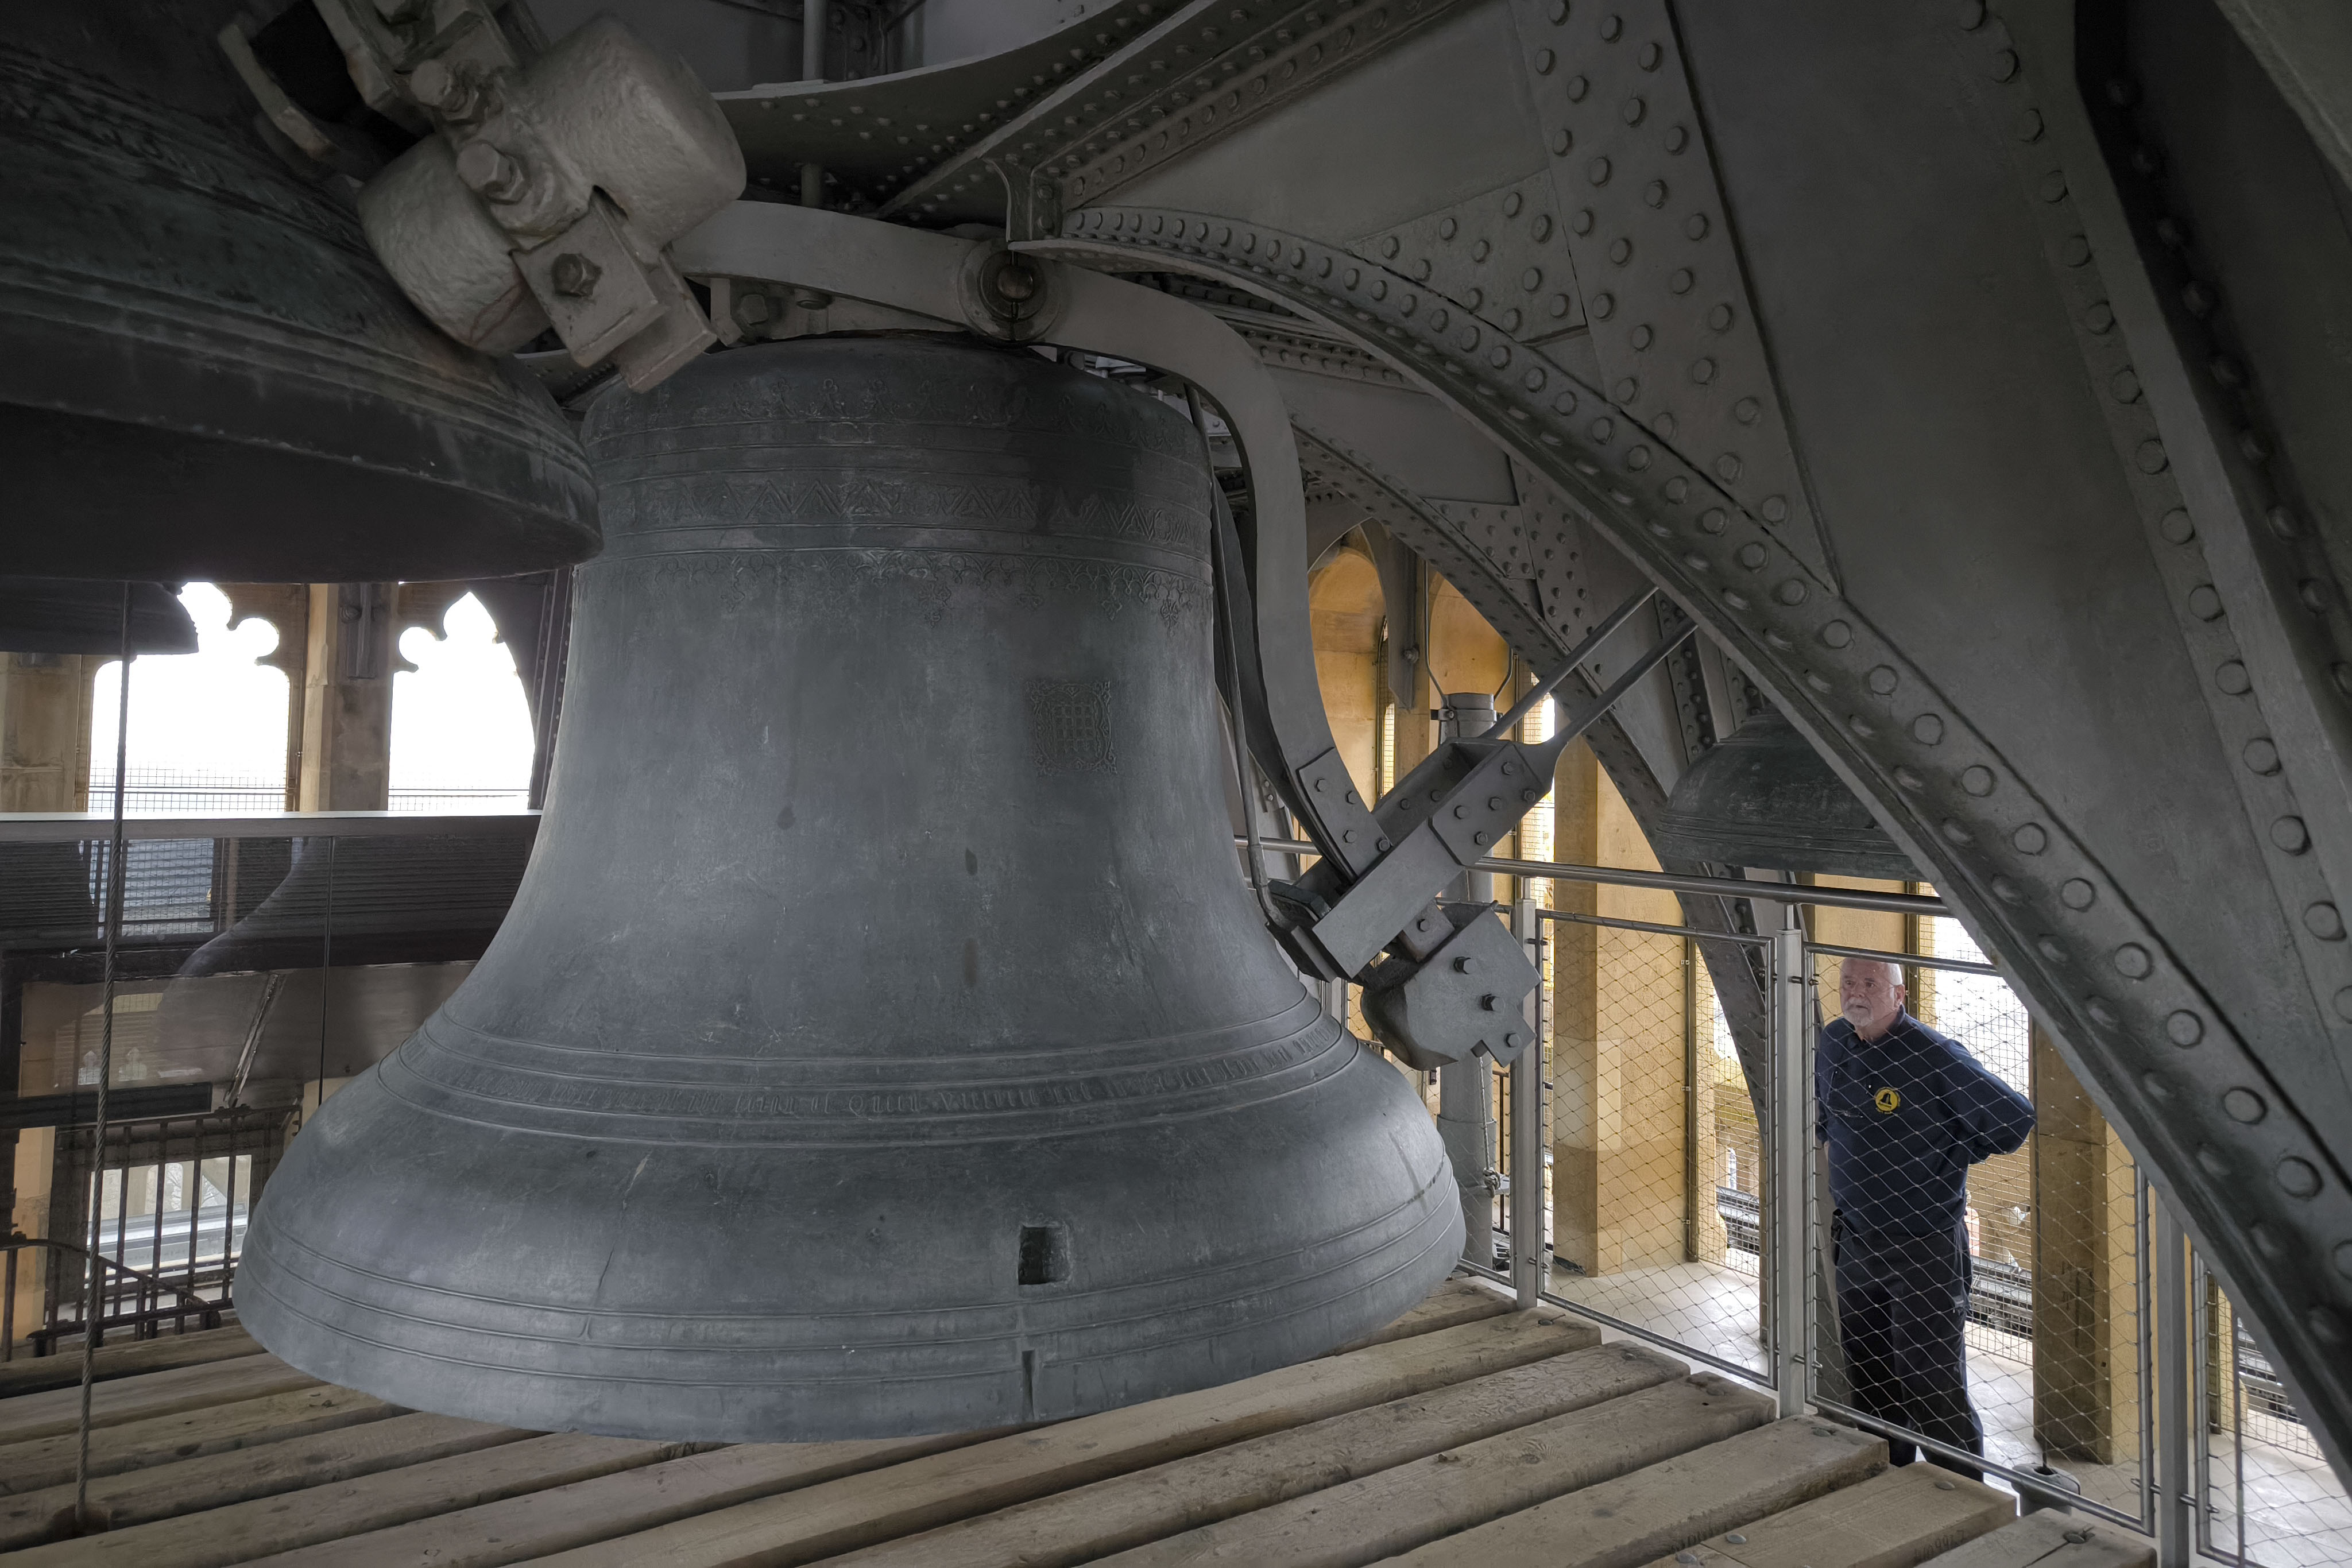 La campana mayor, otro atractivo del 'Big Ben'.